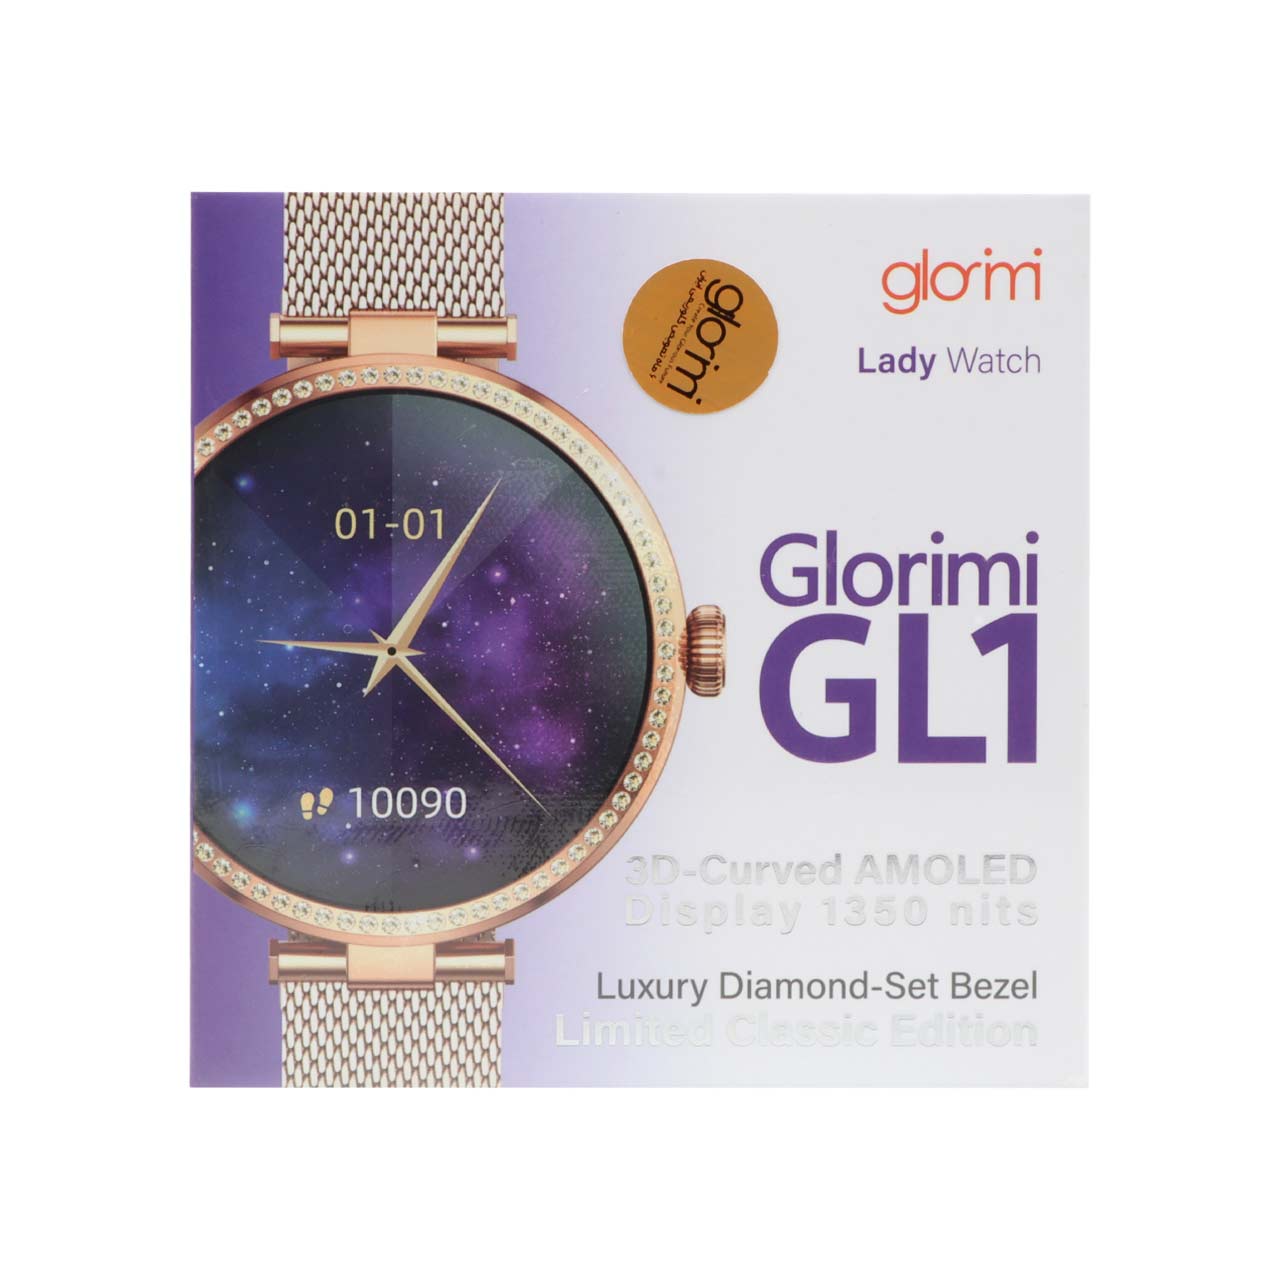 ساعت هوشمند شیائومی Glorimi مدل Lady Watch GL1 - طلایی